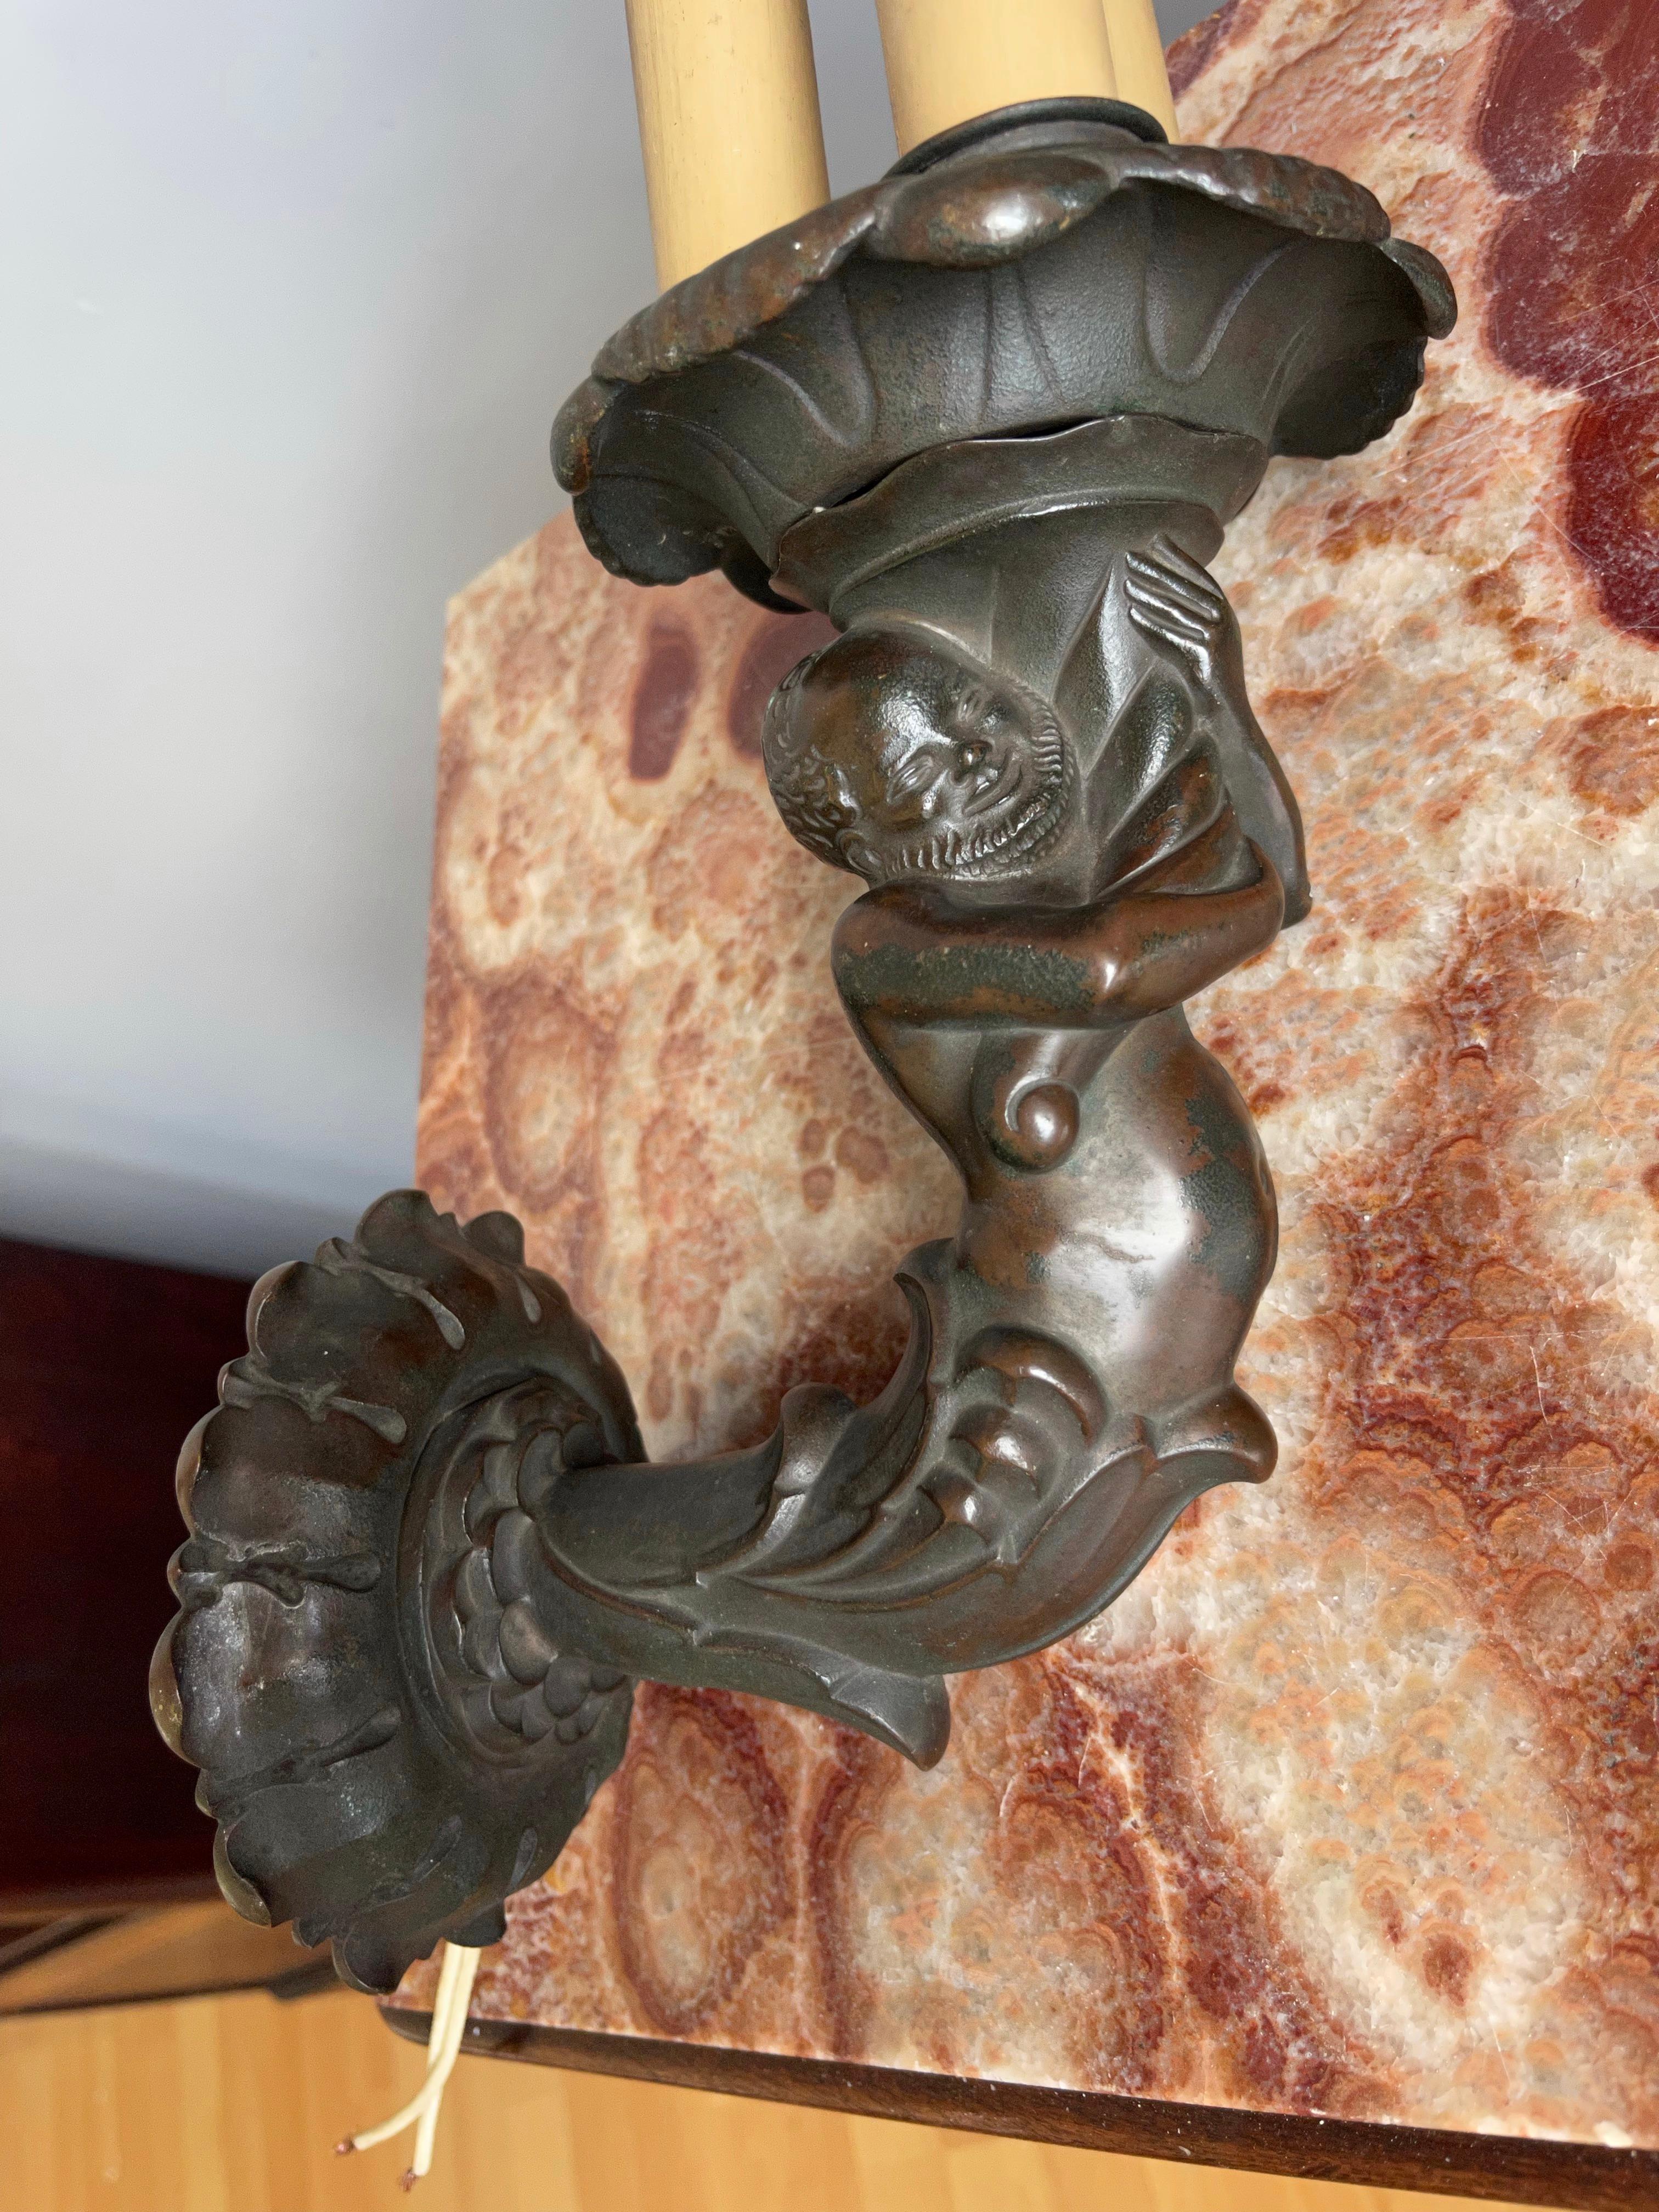 Hochwertig verarbeitete, antike Bronzewandleuchte mit einer gnomartigen Figur, die einen lotusblumenartigen Schirm hält.

Die seltensten und stilvollsten Antiquitäten zu finden, ist etwas, das wir immer angestrebt haben. Wir denken schon lange